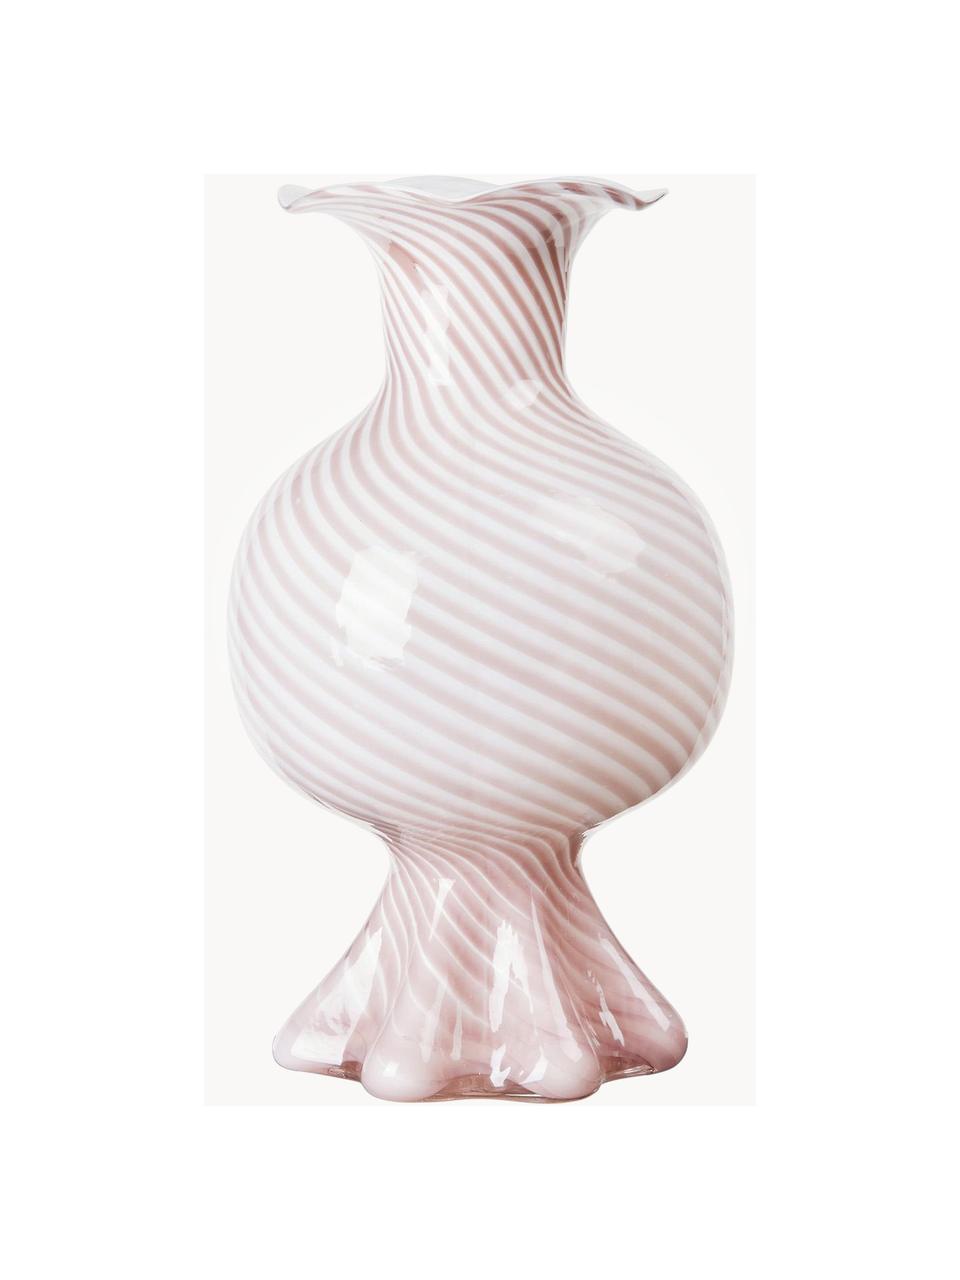 Ručně foukaná skleněná váza Mella, Foukané sklo, Světle růžová, bílá, Ø 18 cm, V 30 cm